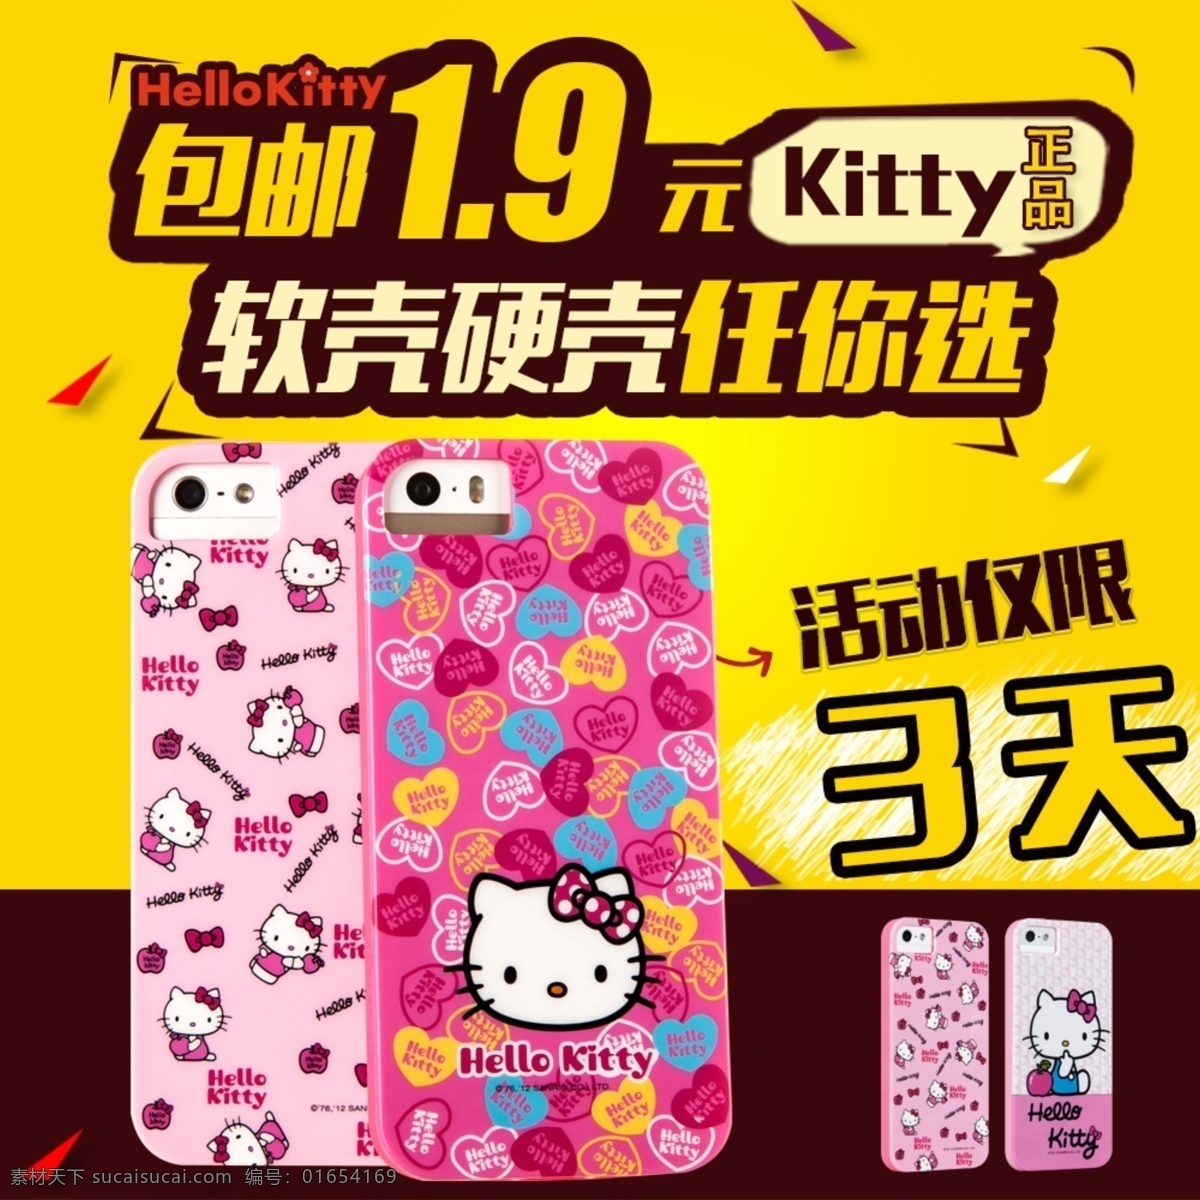 直通车 卡通 手机壳 5s iphone5s iphonese kitty猫 粉嫩 黄色